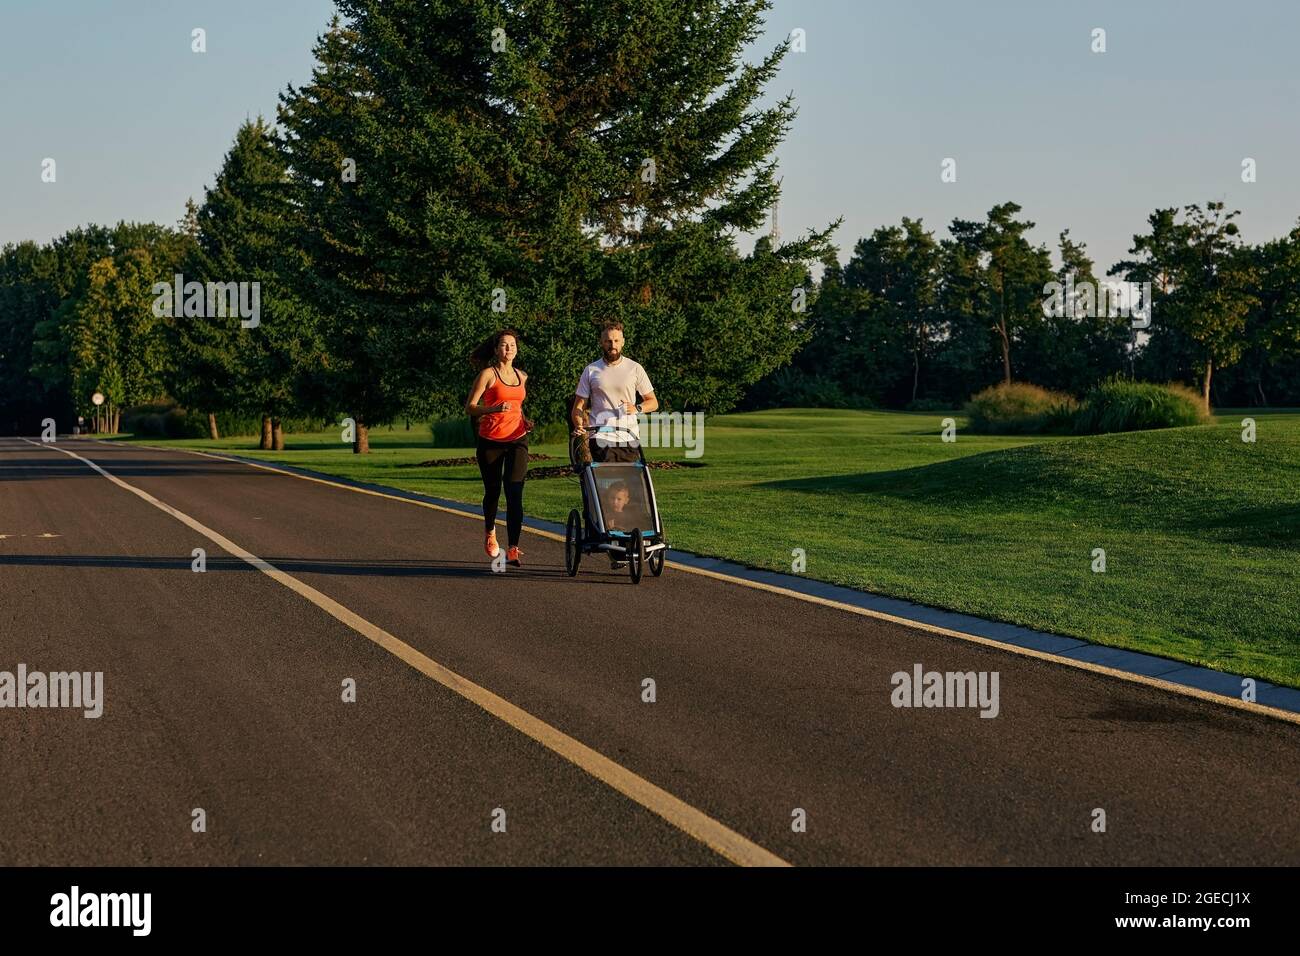 Aktives Familienleben. Junge Familie mit ihrem Kind in einem Jogging-Kinderwagen beim Joggen in einem öffentlichen Park Stockfoto